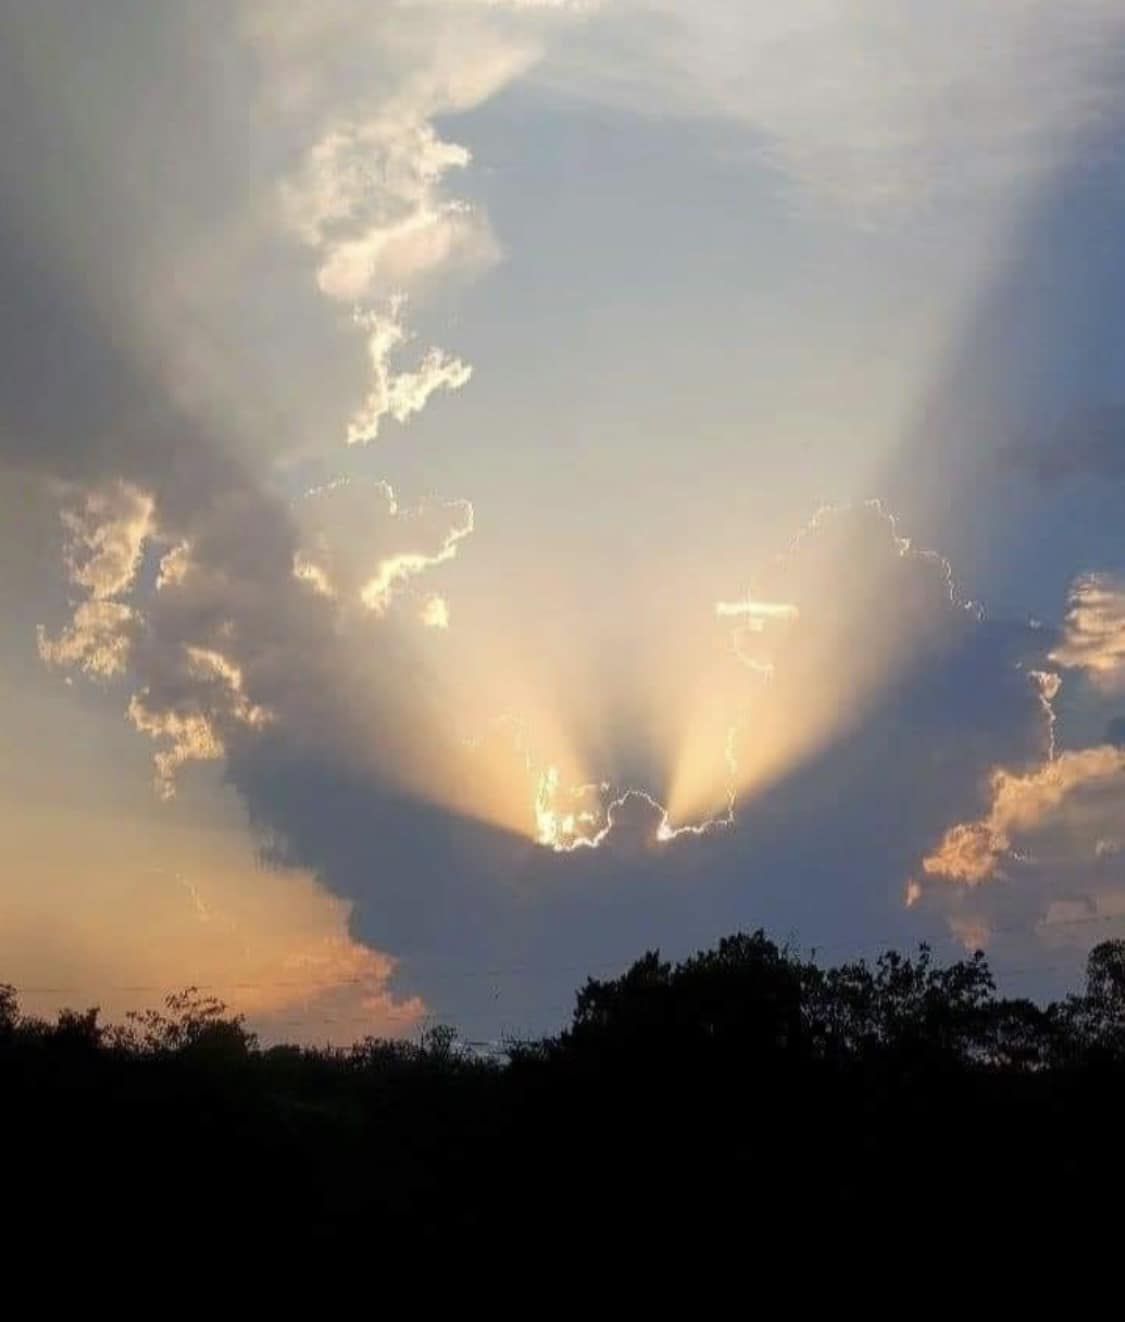 Angel over South East, Louisiana, USA